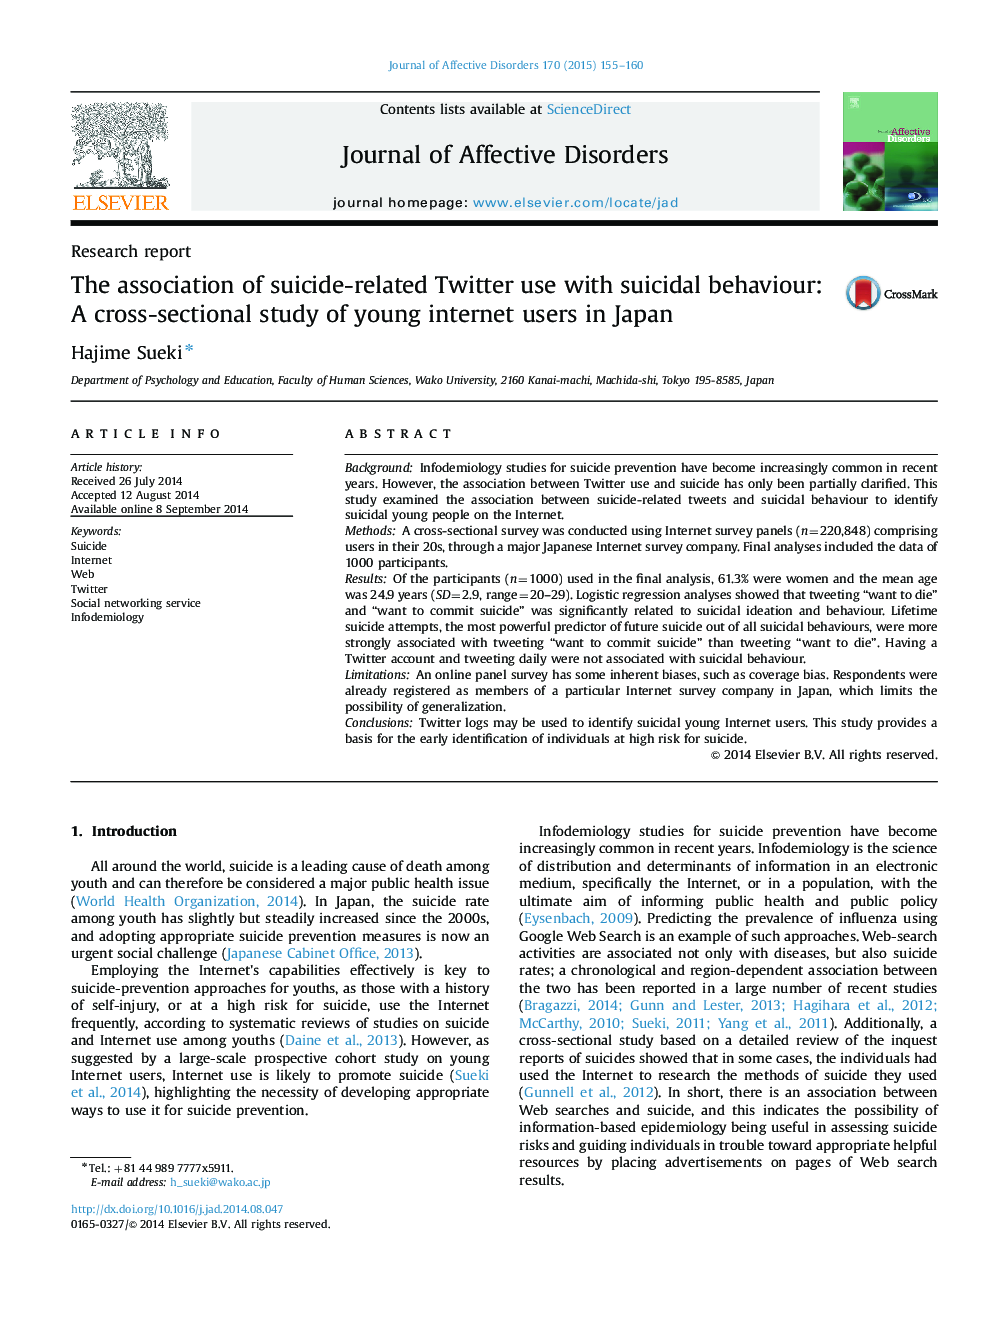 گزارش تحقیق ارتباط استفاده از توییتر مربوط به خودکشی با رفتار خودکشی: مطالعه مقطعی از کاربران اینترنت جوان در ژاپن 